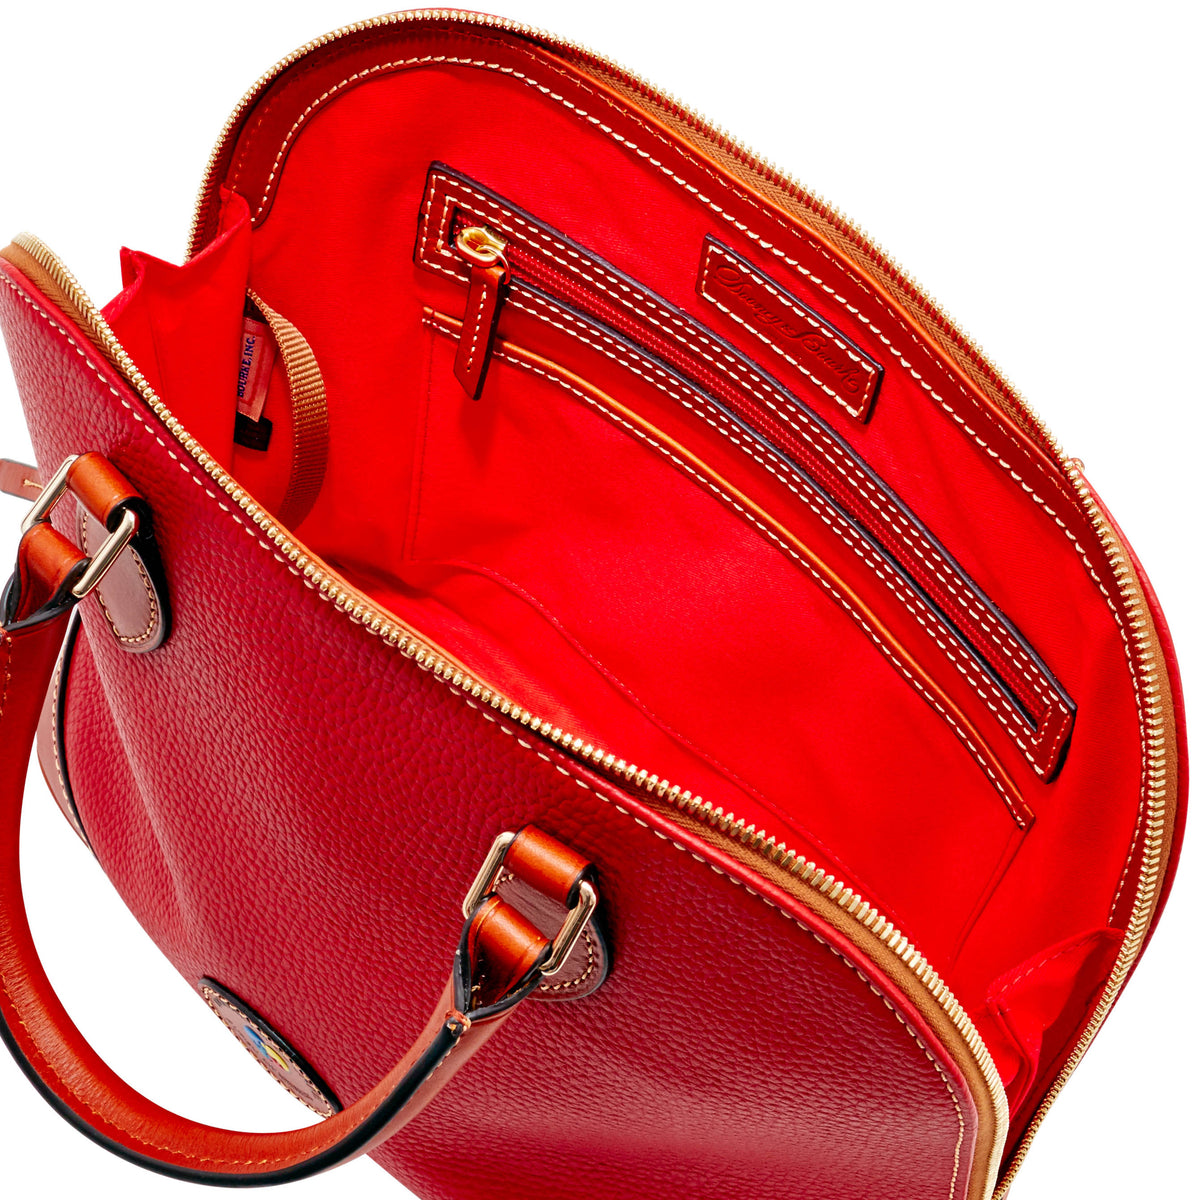 zip satchel purse